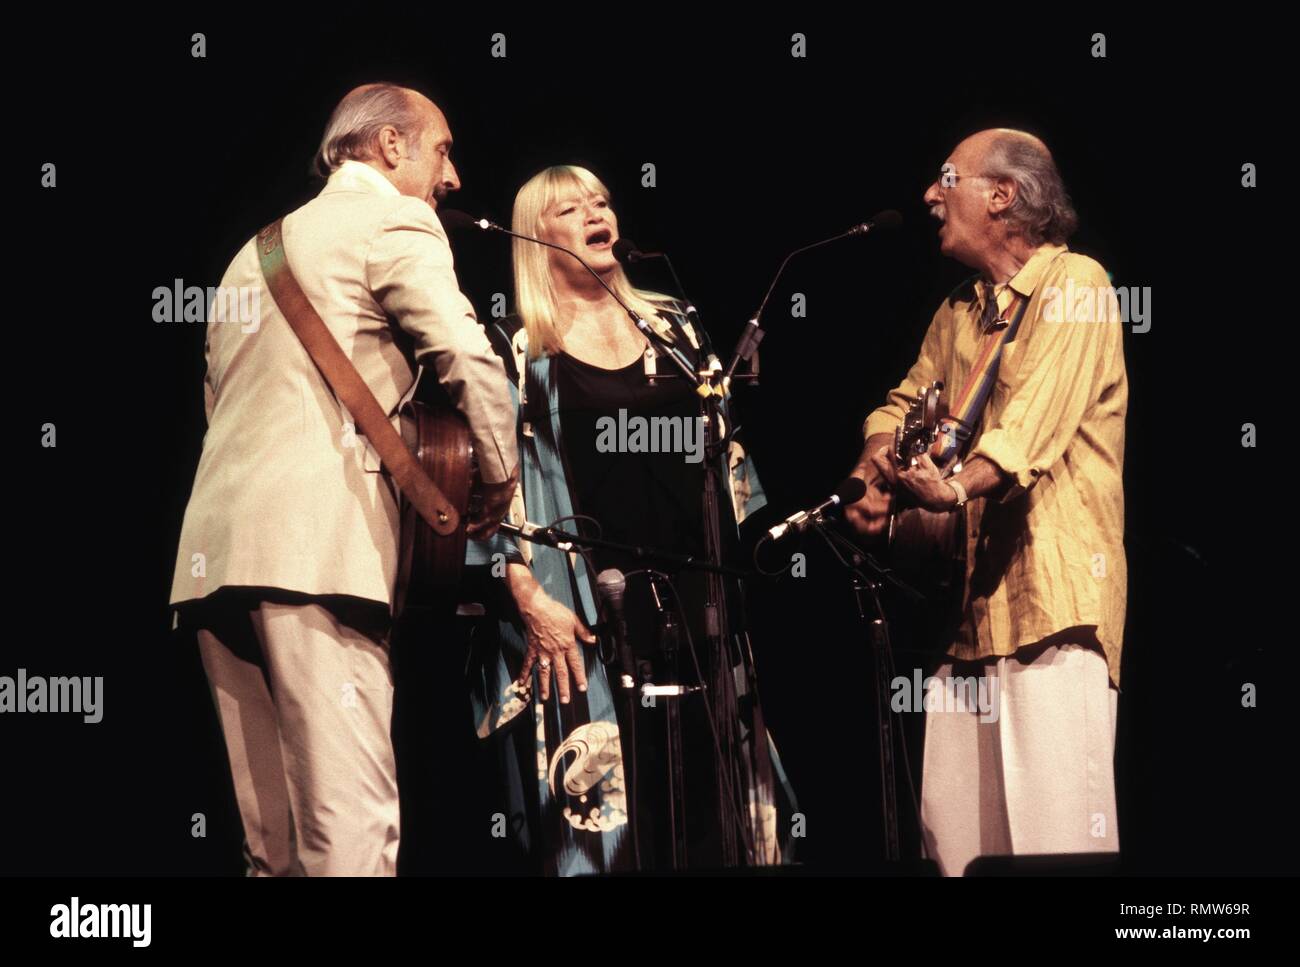 Die Volkslieder singen Trio Peter, Paul und Mary sind dargestellt auf der Bühne während einer "live"-Konzert aussehen. Stockfoto